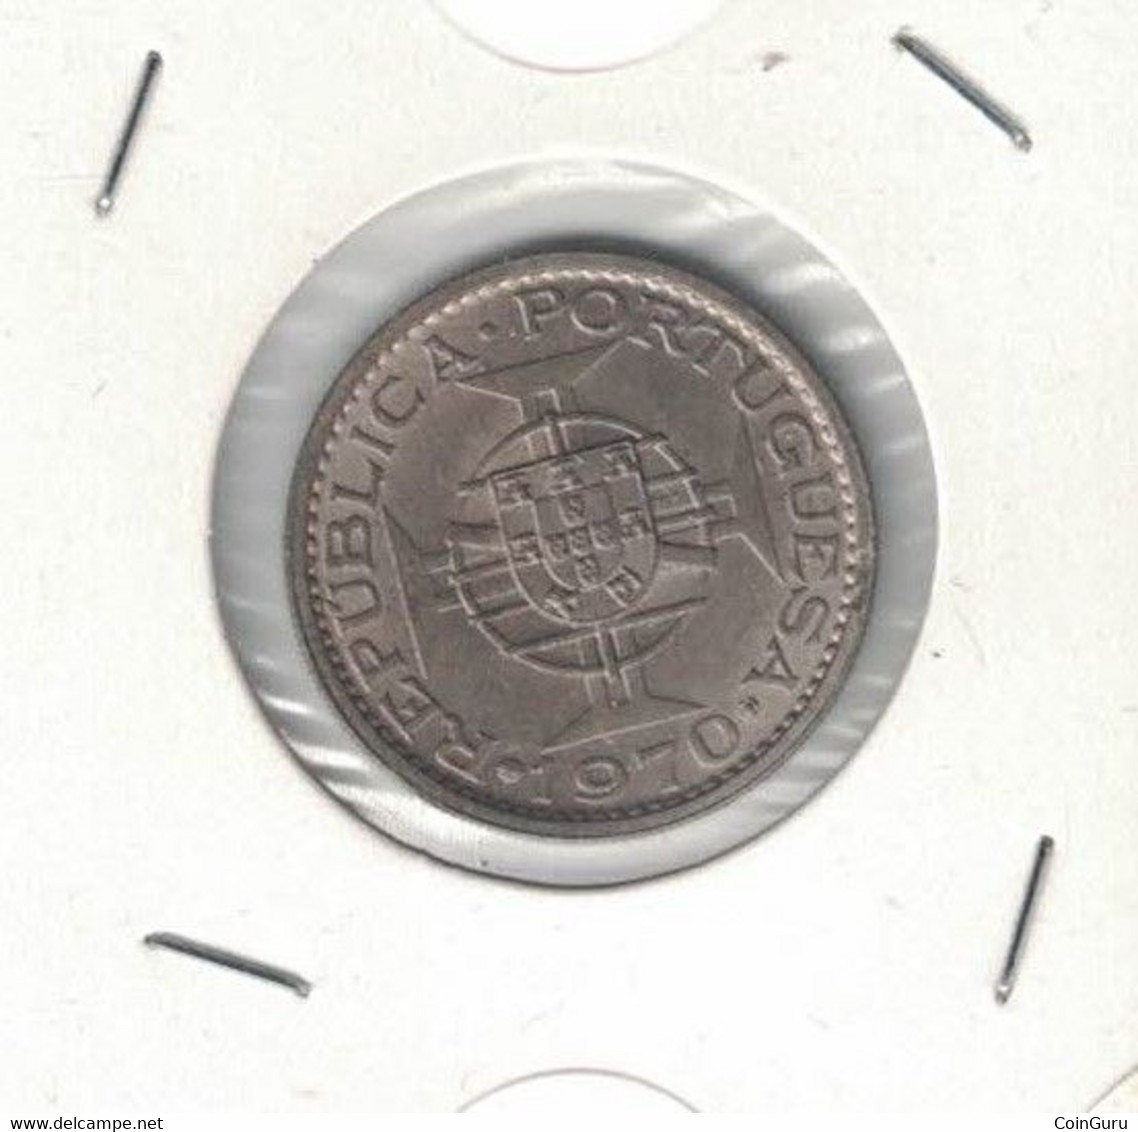 Timor 5$00 5 Escudos 1970 High Grade - Timor